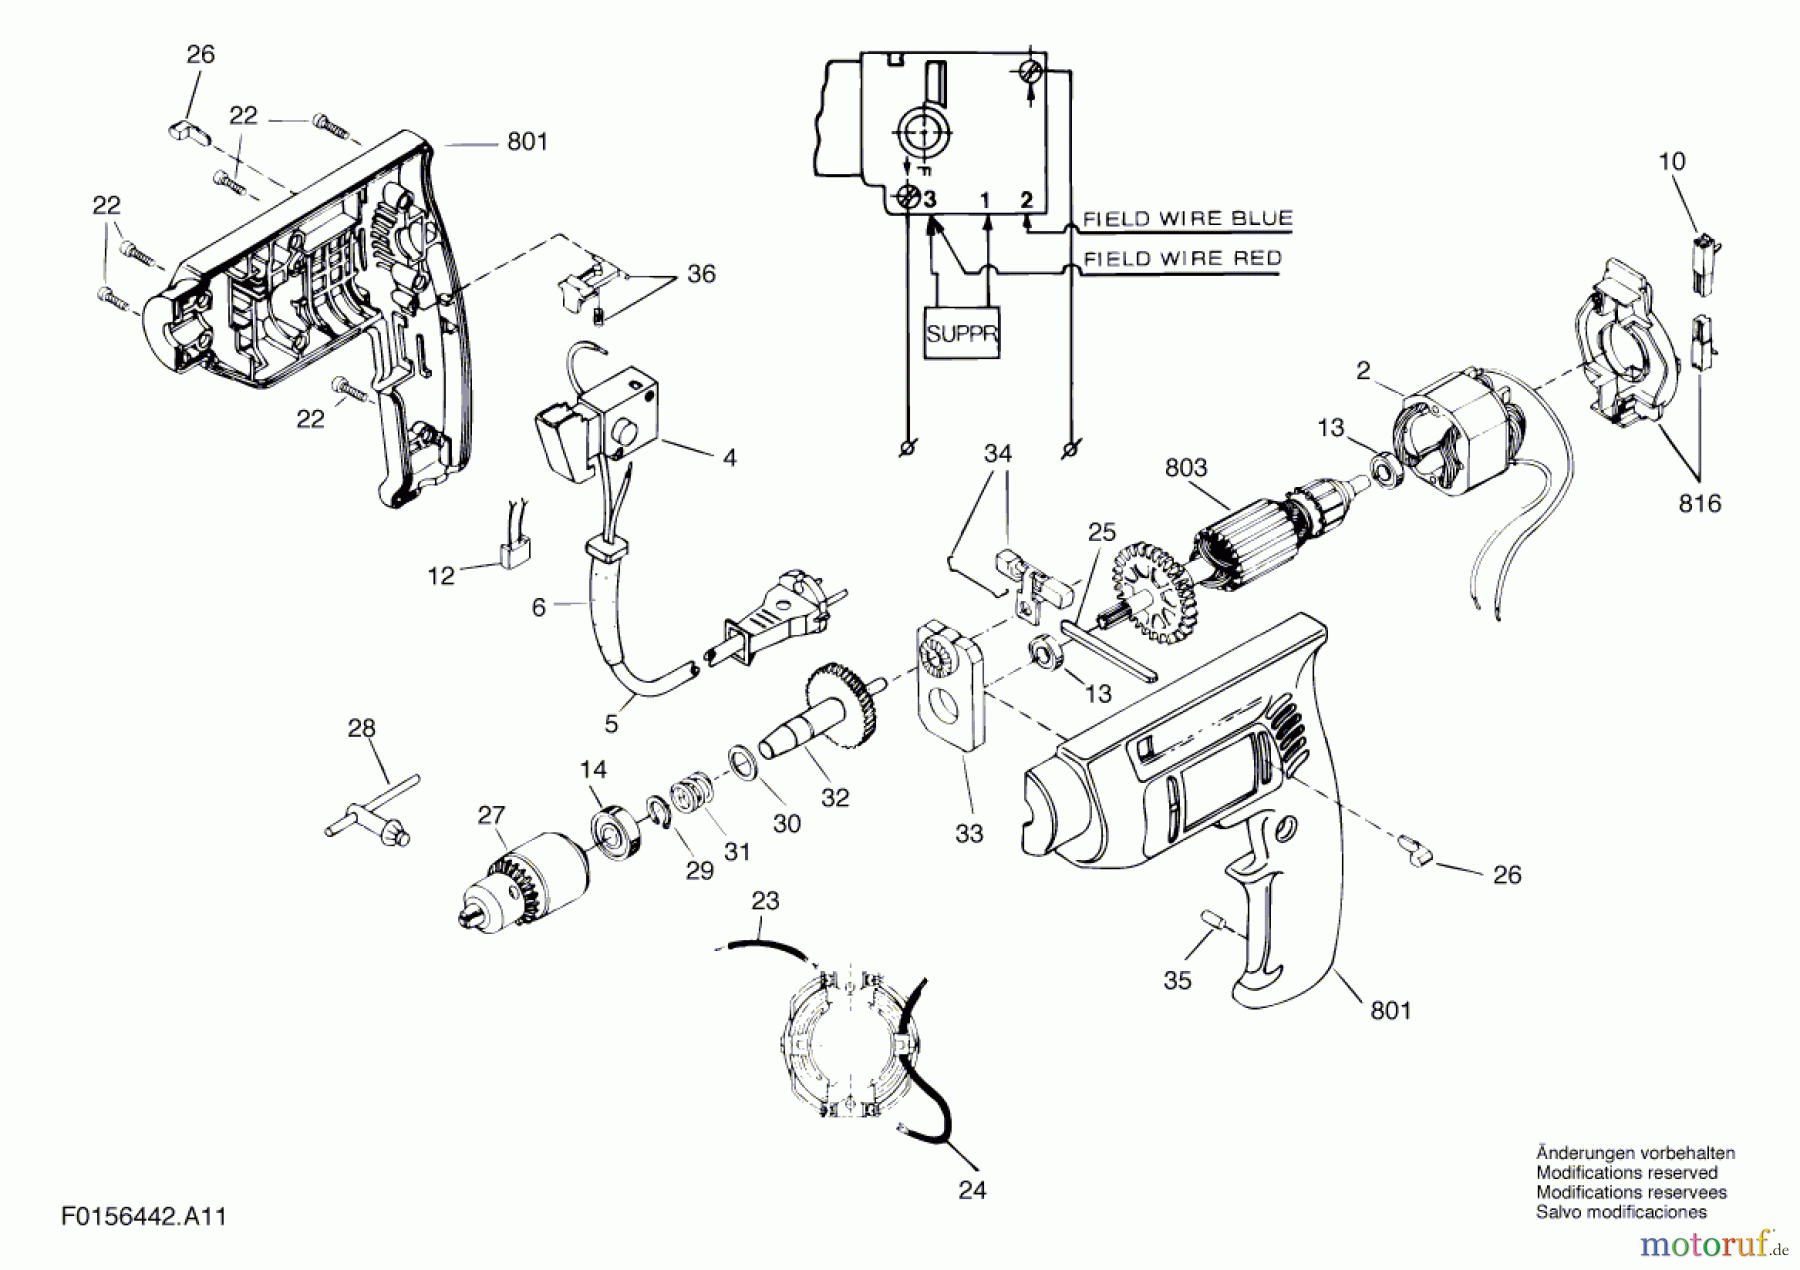  Bosch Werkzeug Schlagbohrmaschine 6442 Seite 1